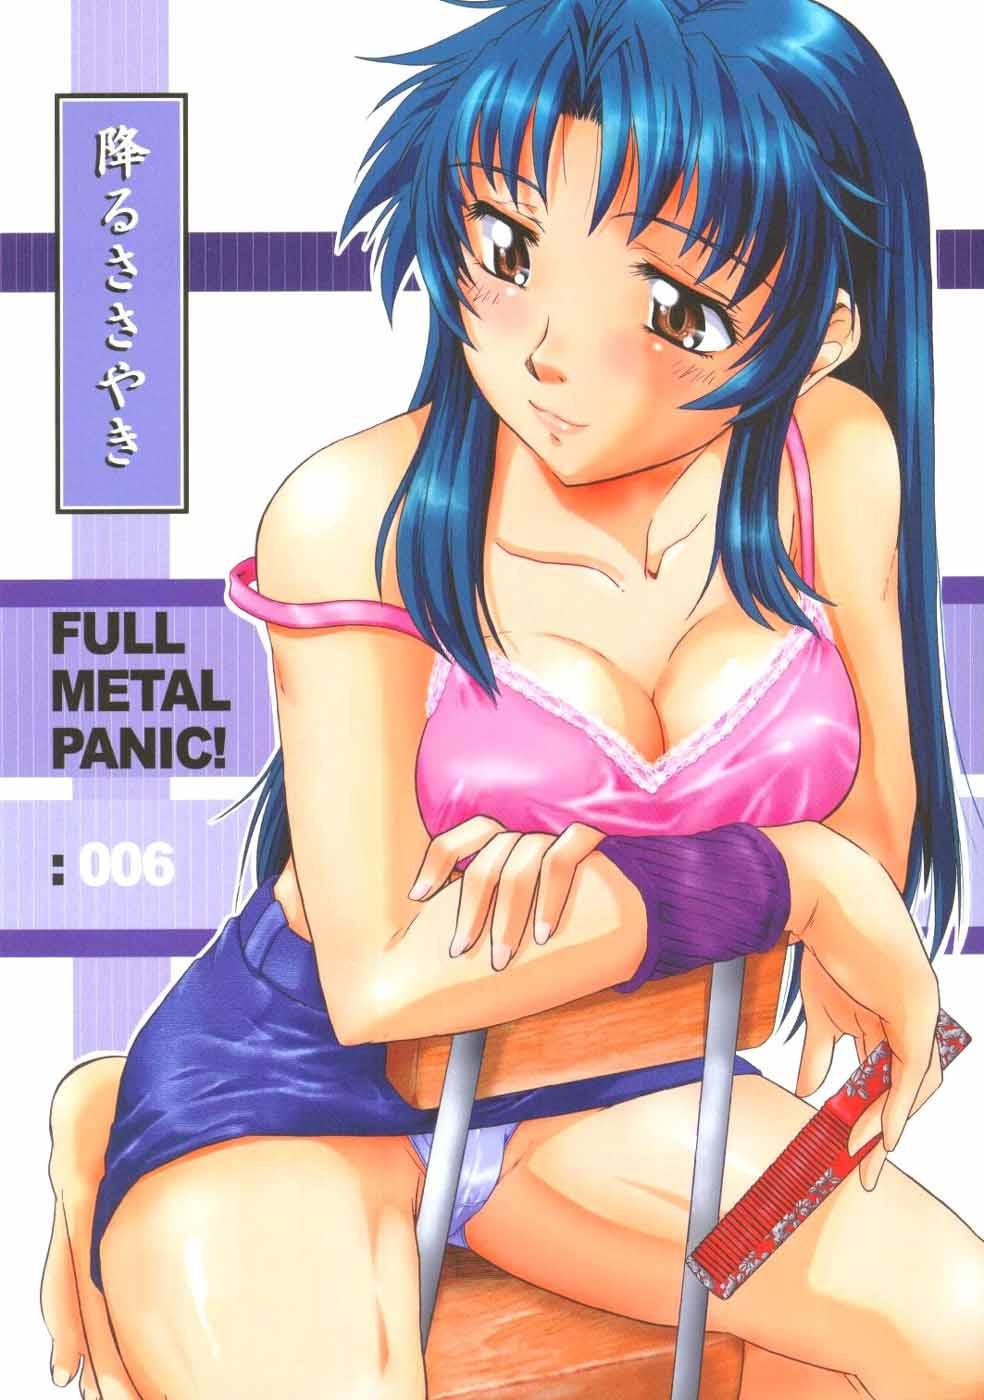 Nena Full Metal Panic! 6 Furu Sasayaki - Full metal panic Perfect Body Porn - Picture 1